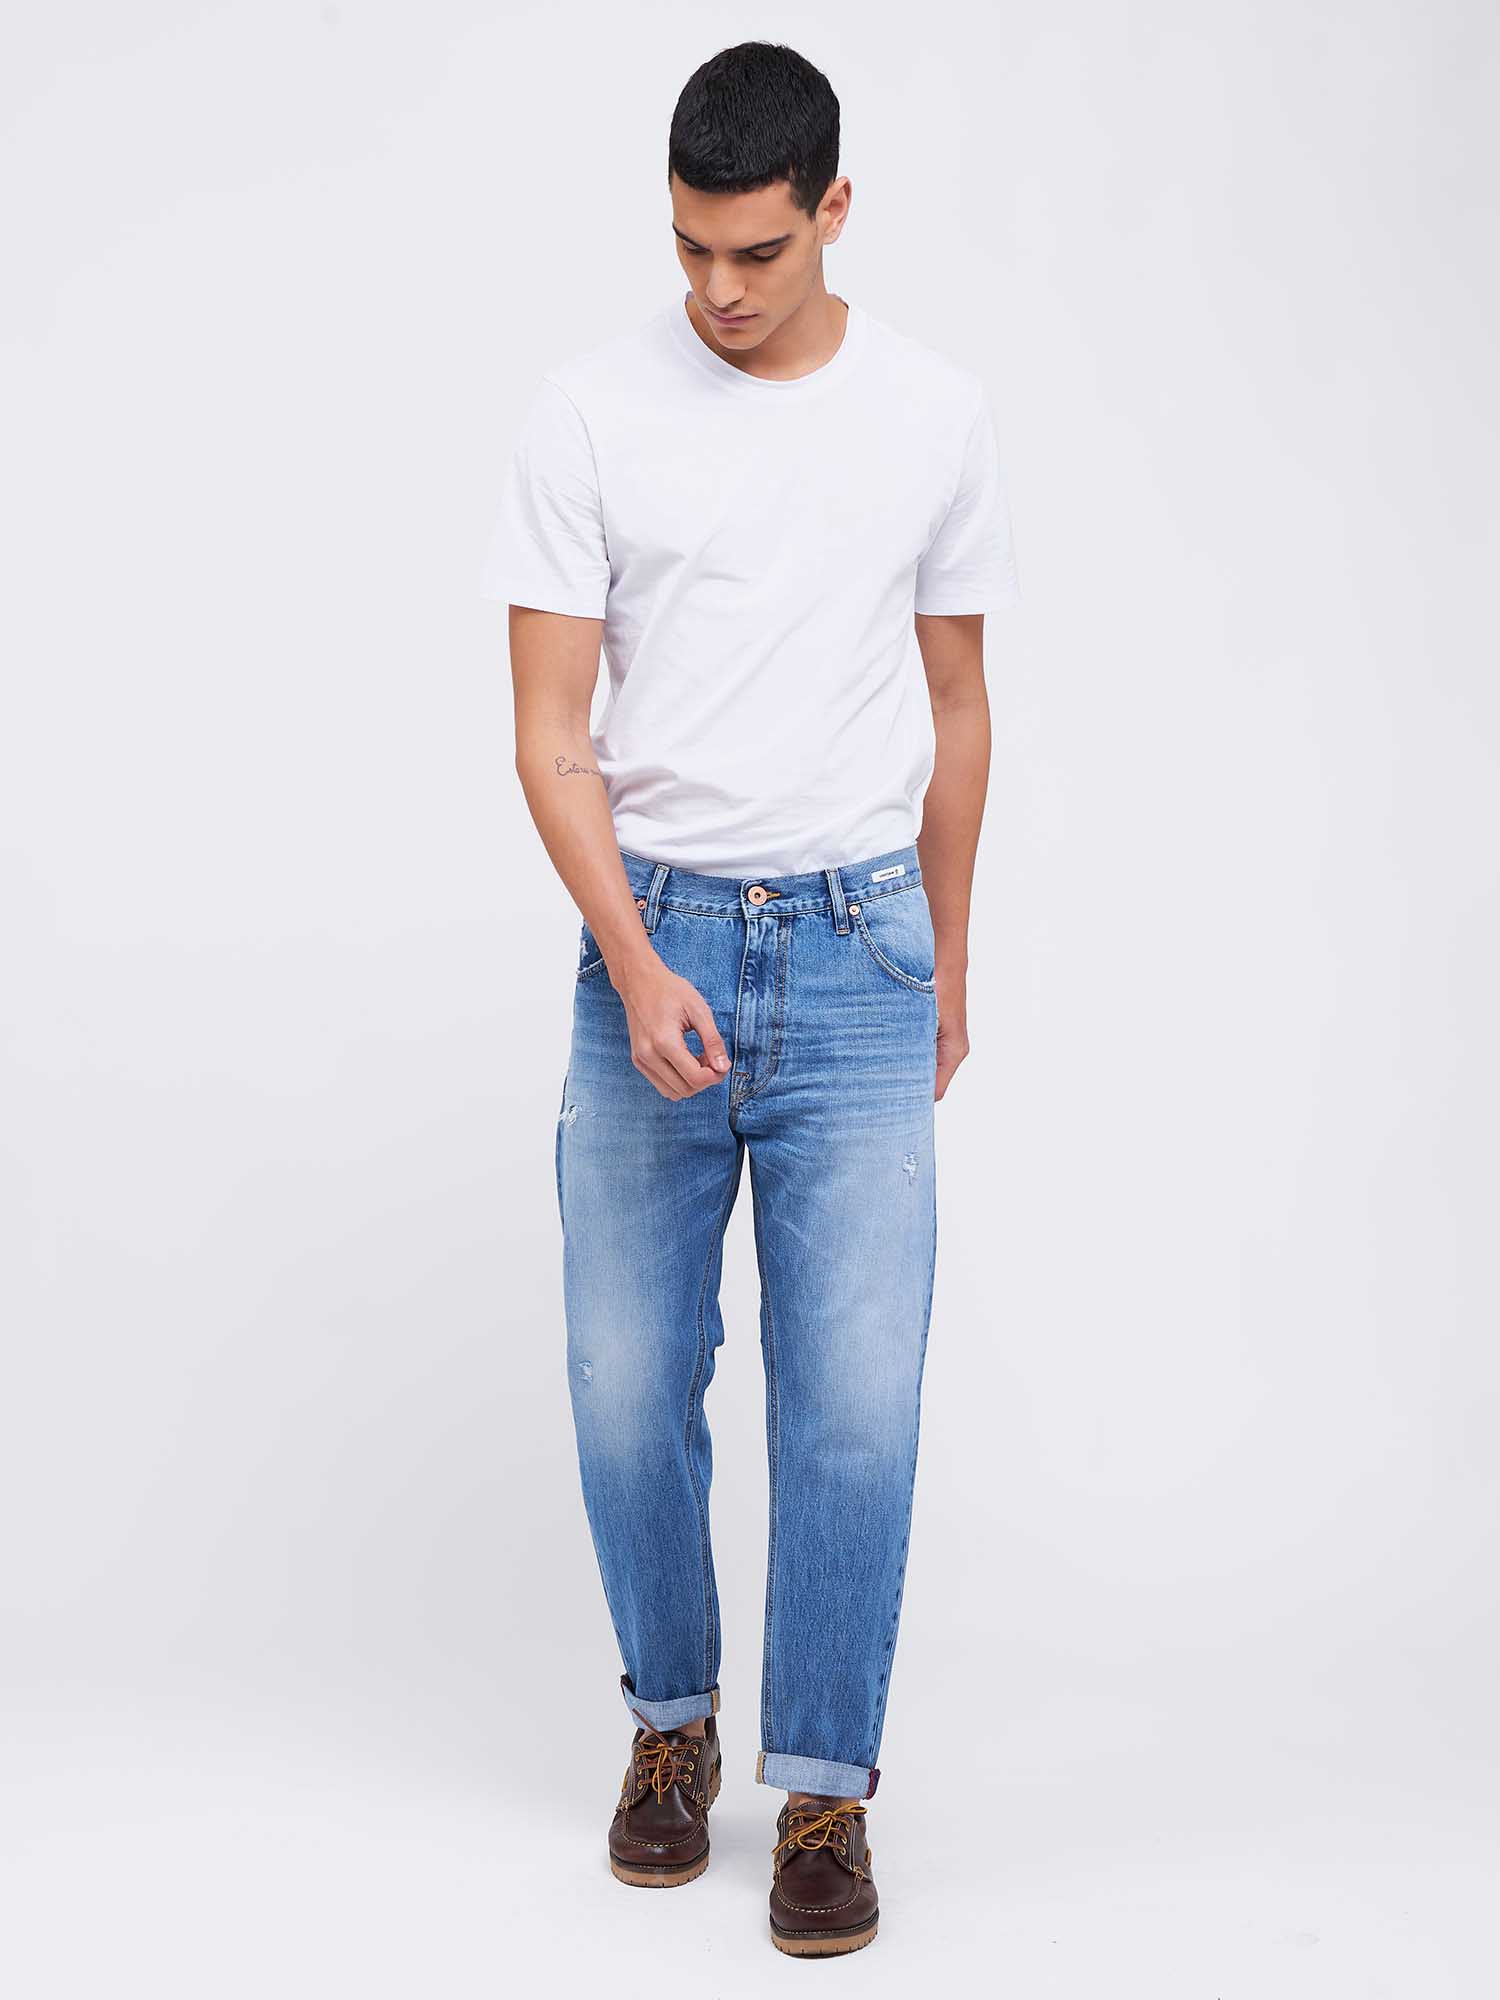 NEW ARIS LOOSE S3 - Uniform Jeans Official